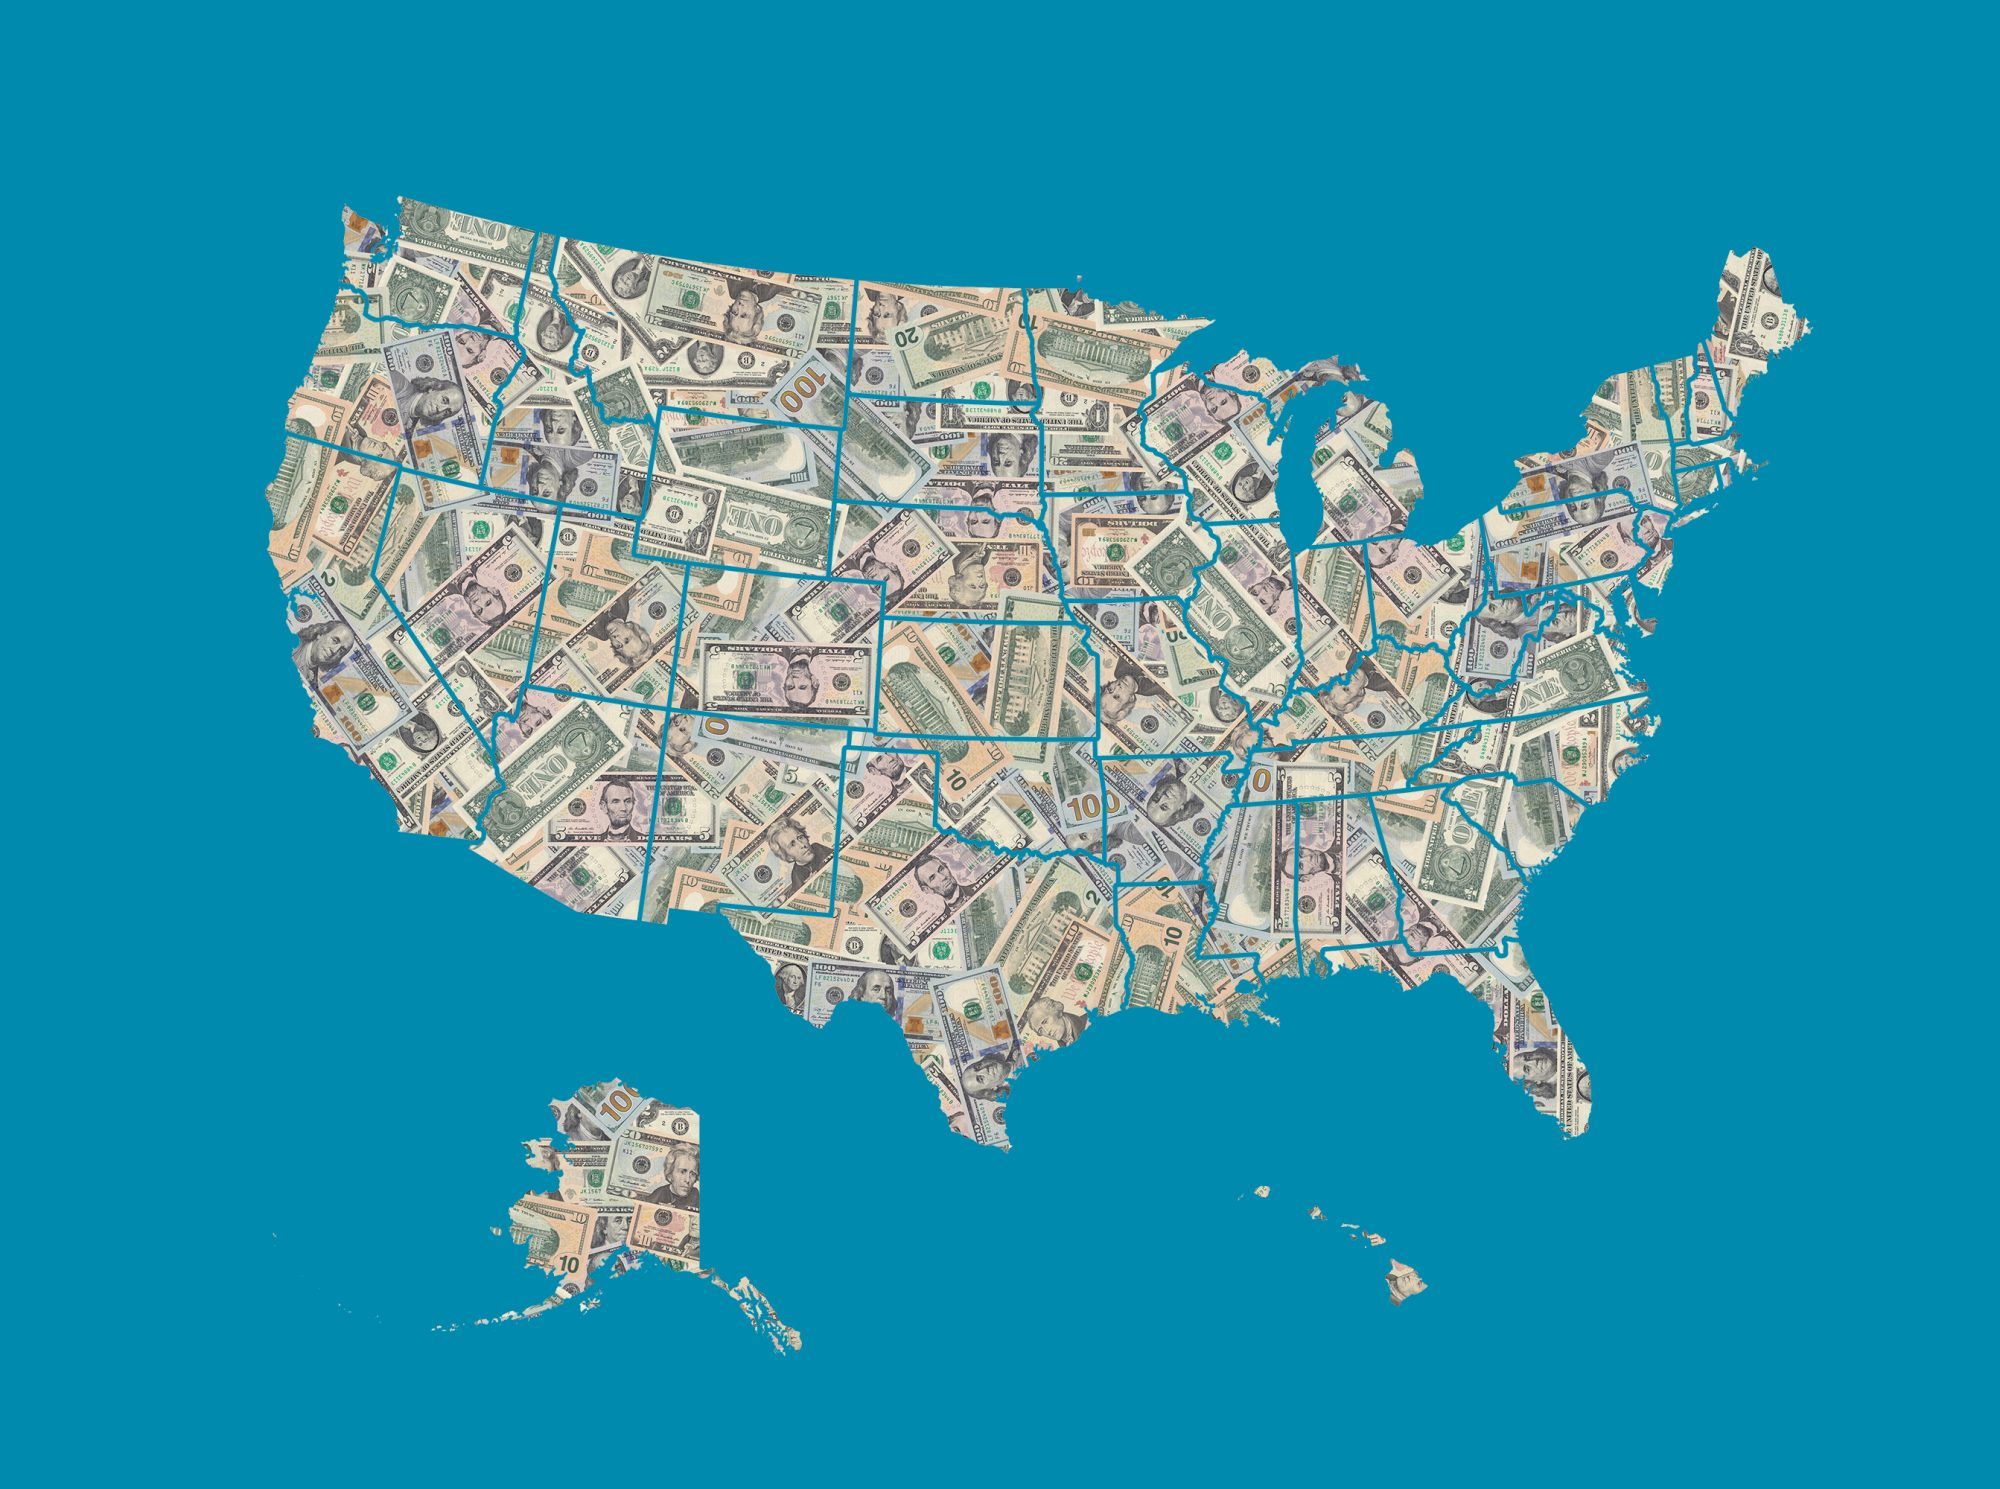 แผนที่สหรัฐอเมริกาประกอบด้วยธนบัตรดอลลาร์อเมริกัน